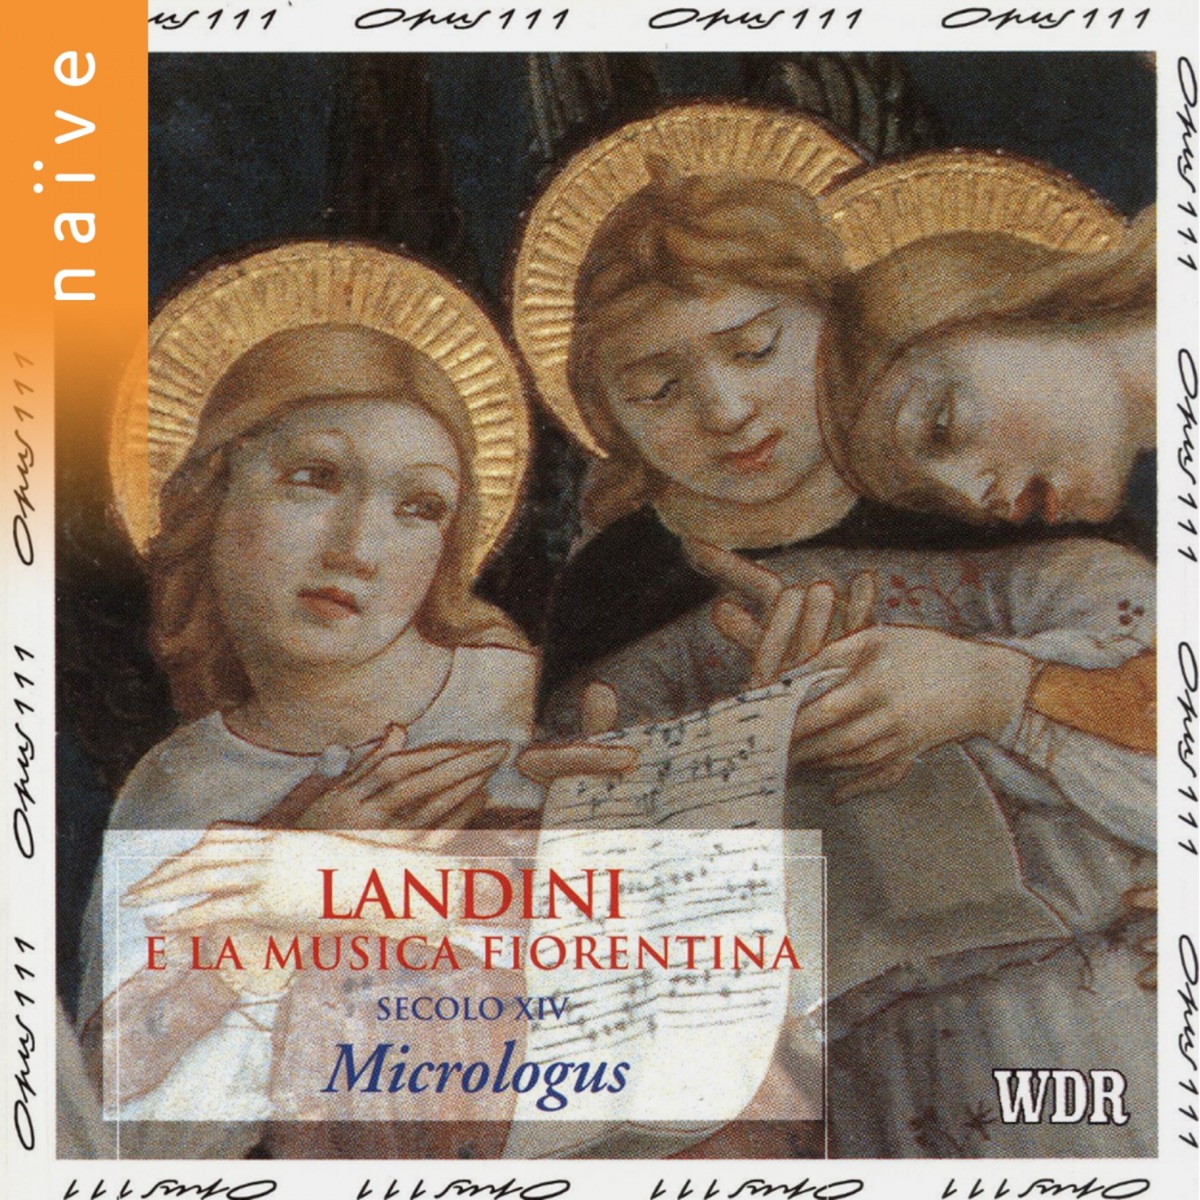 Landini e la musica Fiorentina by Micrologus on Apple Music